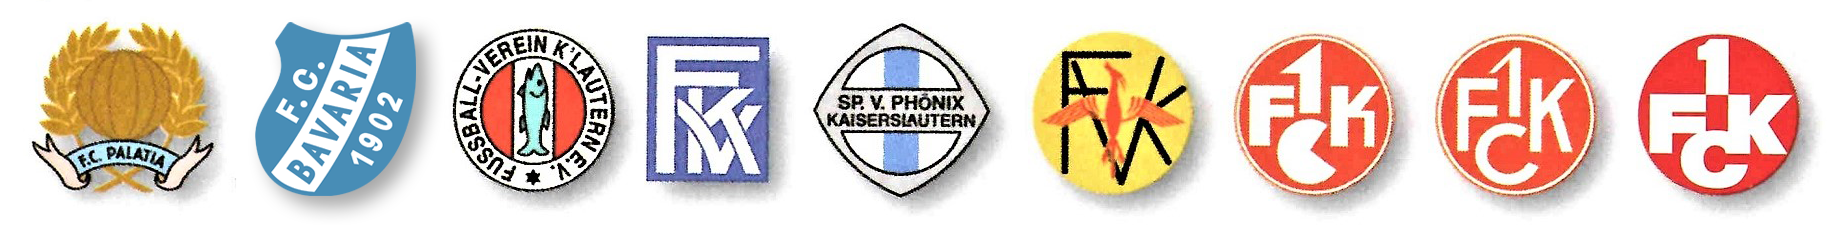 Aktualisierte Wappenleiste des 1. FC Kaiserslautern und seiner Vorgängervereine